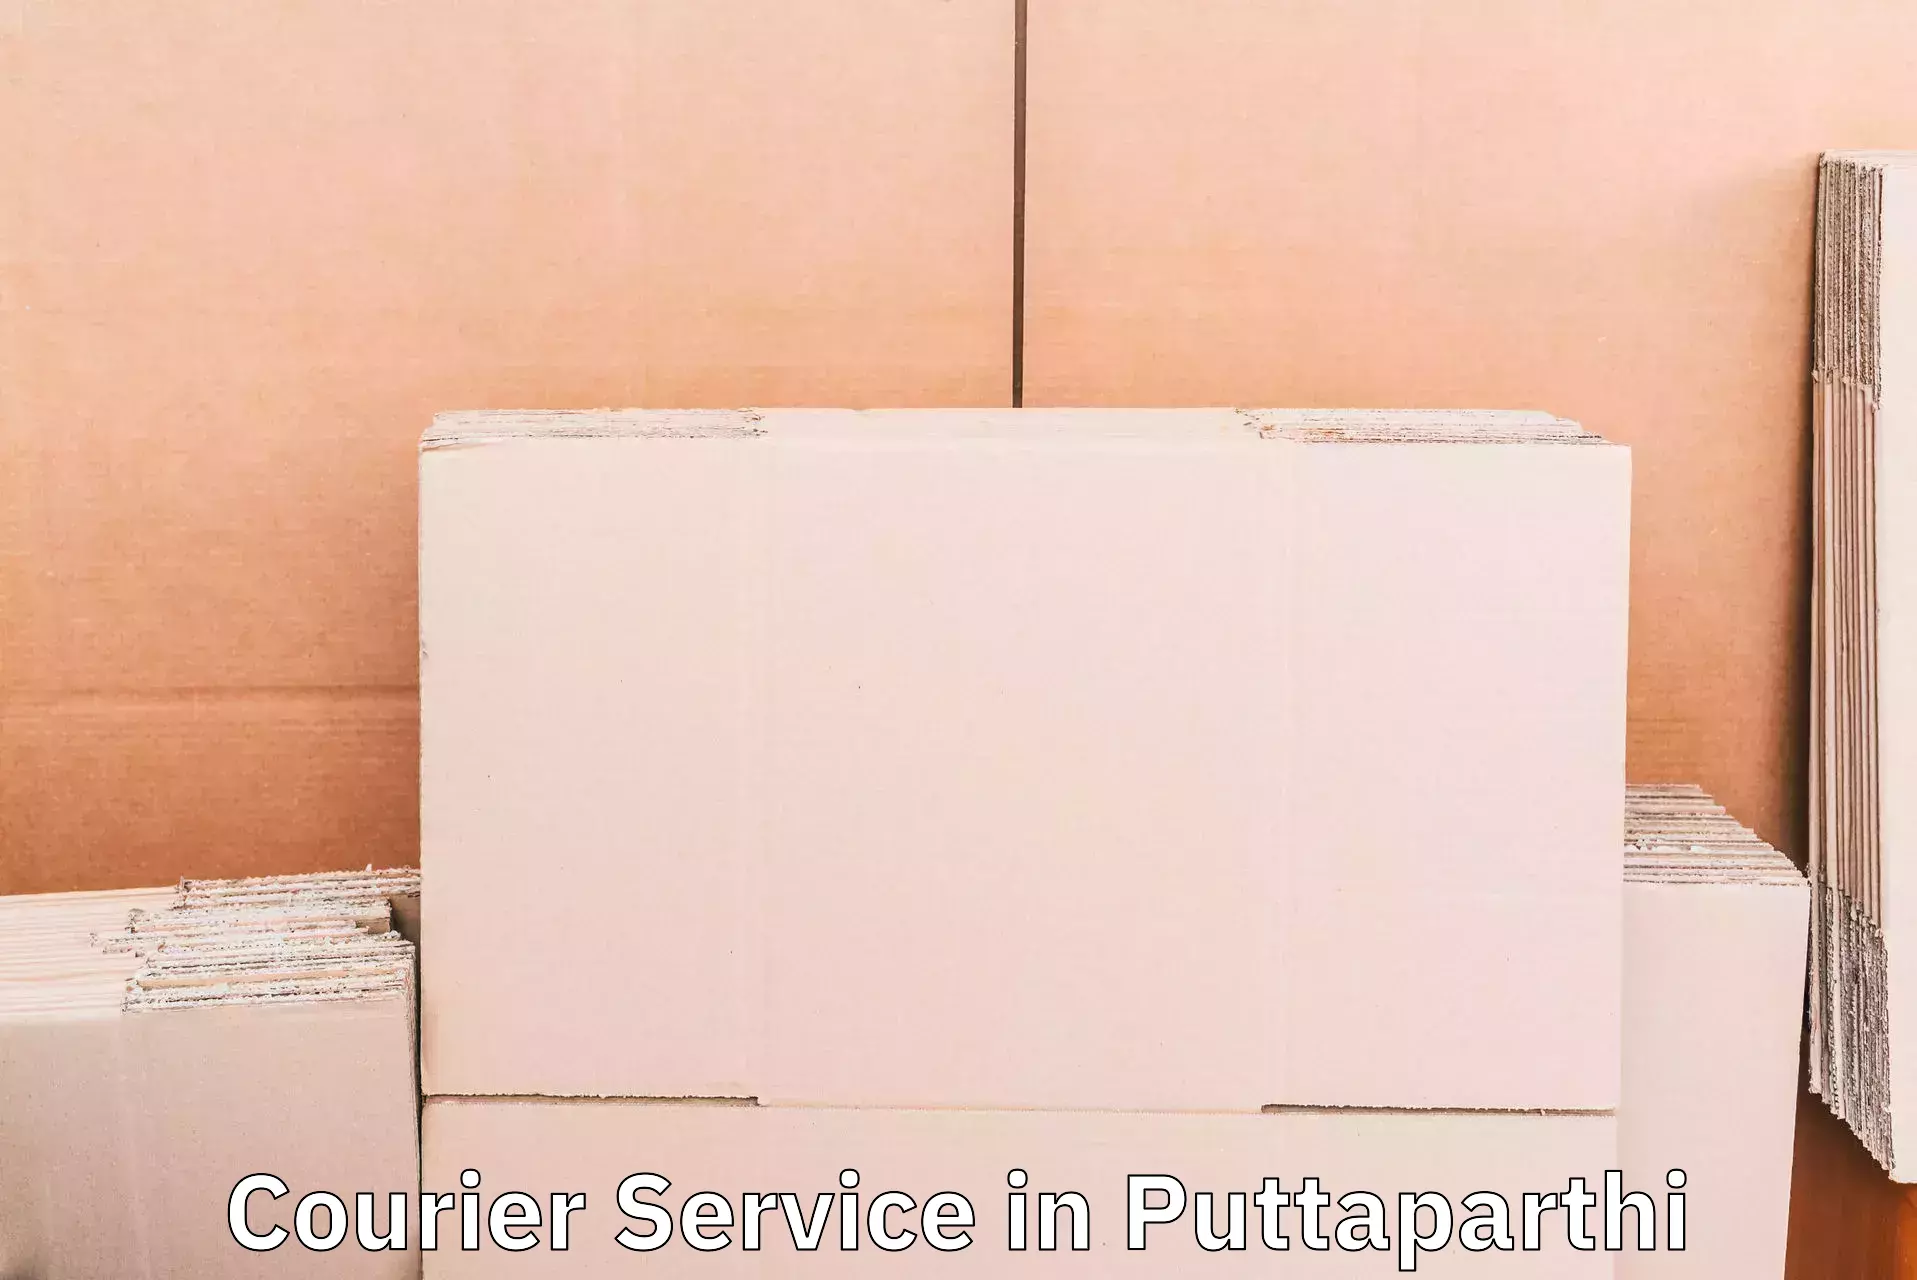 Efficient logistics management in Puttaparthi